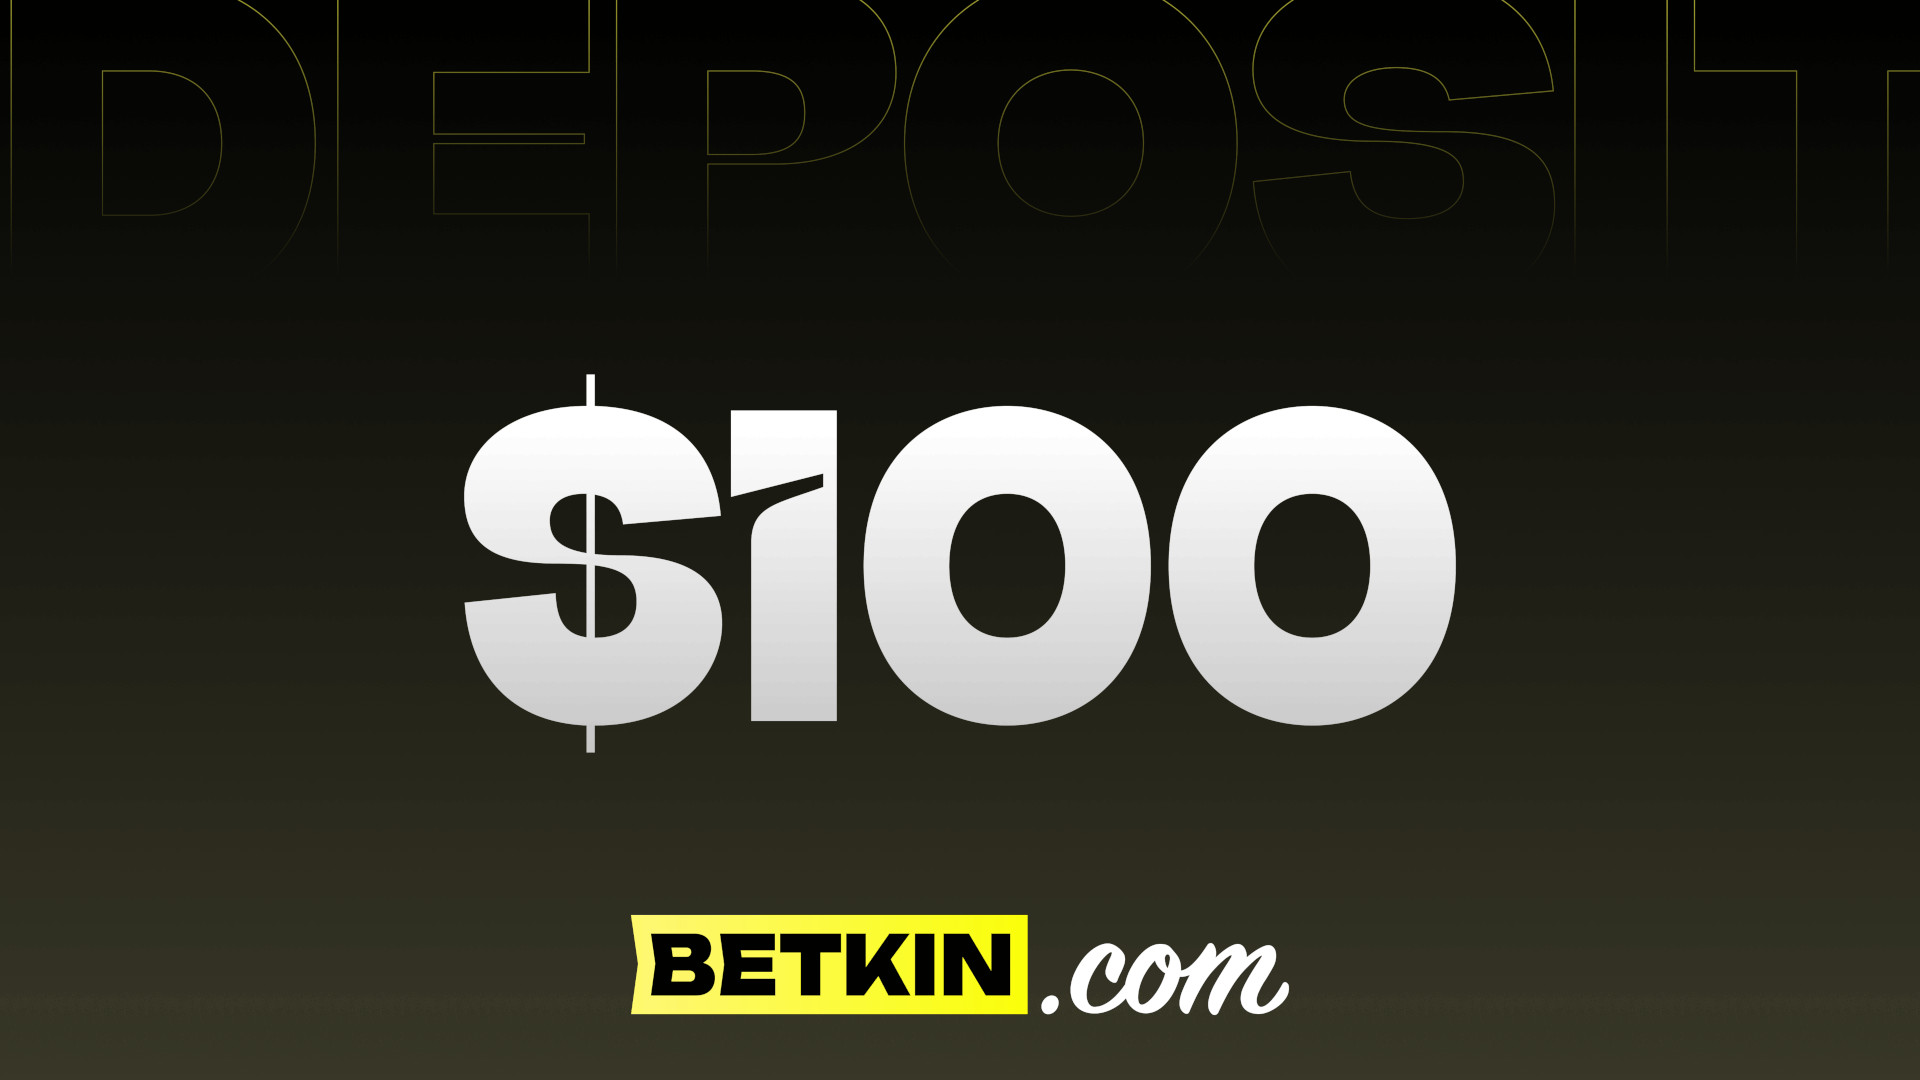 Betkin $100 Coupon, 111.35 usd